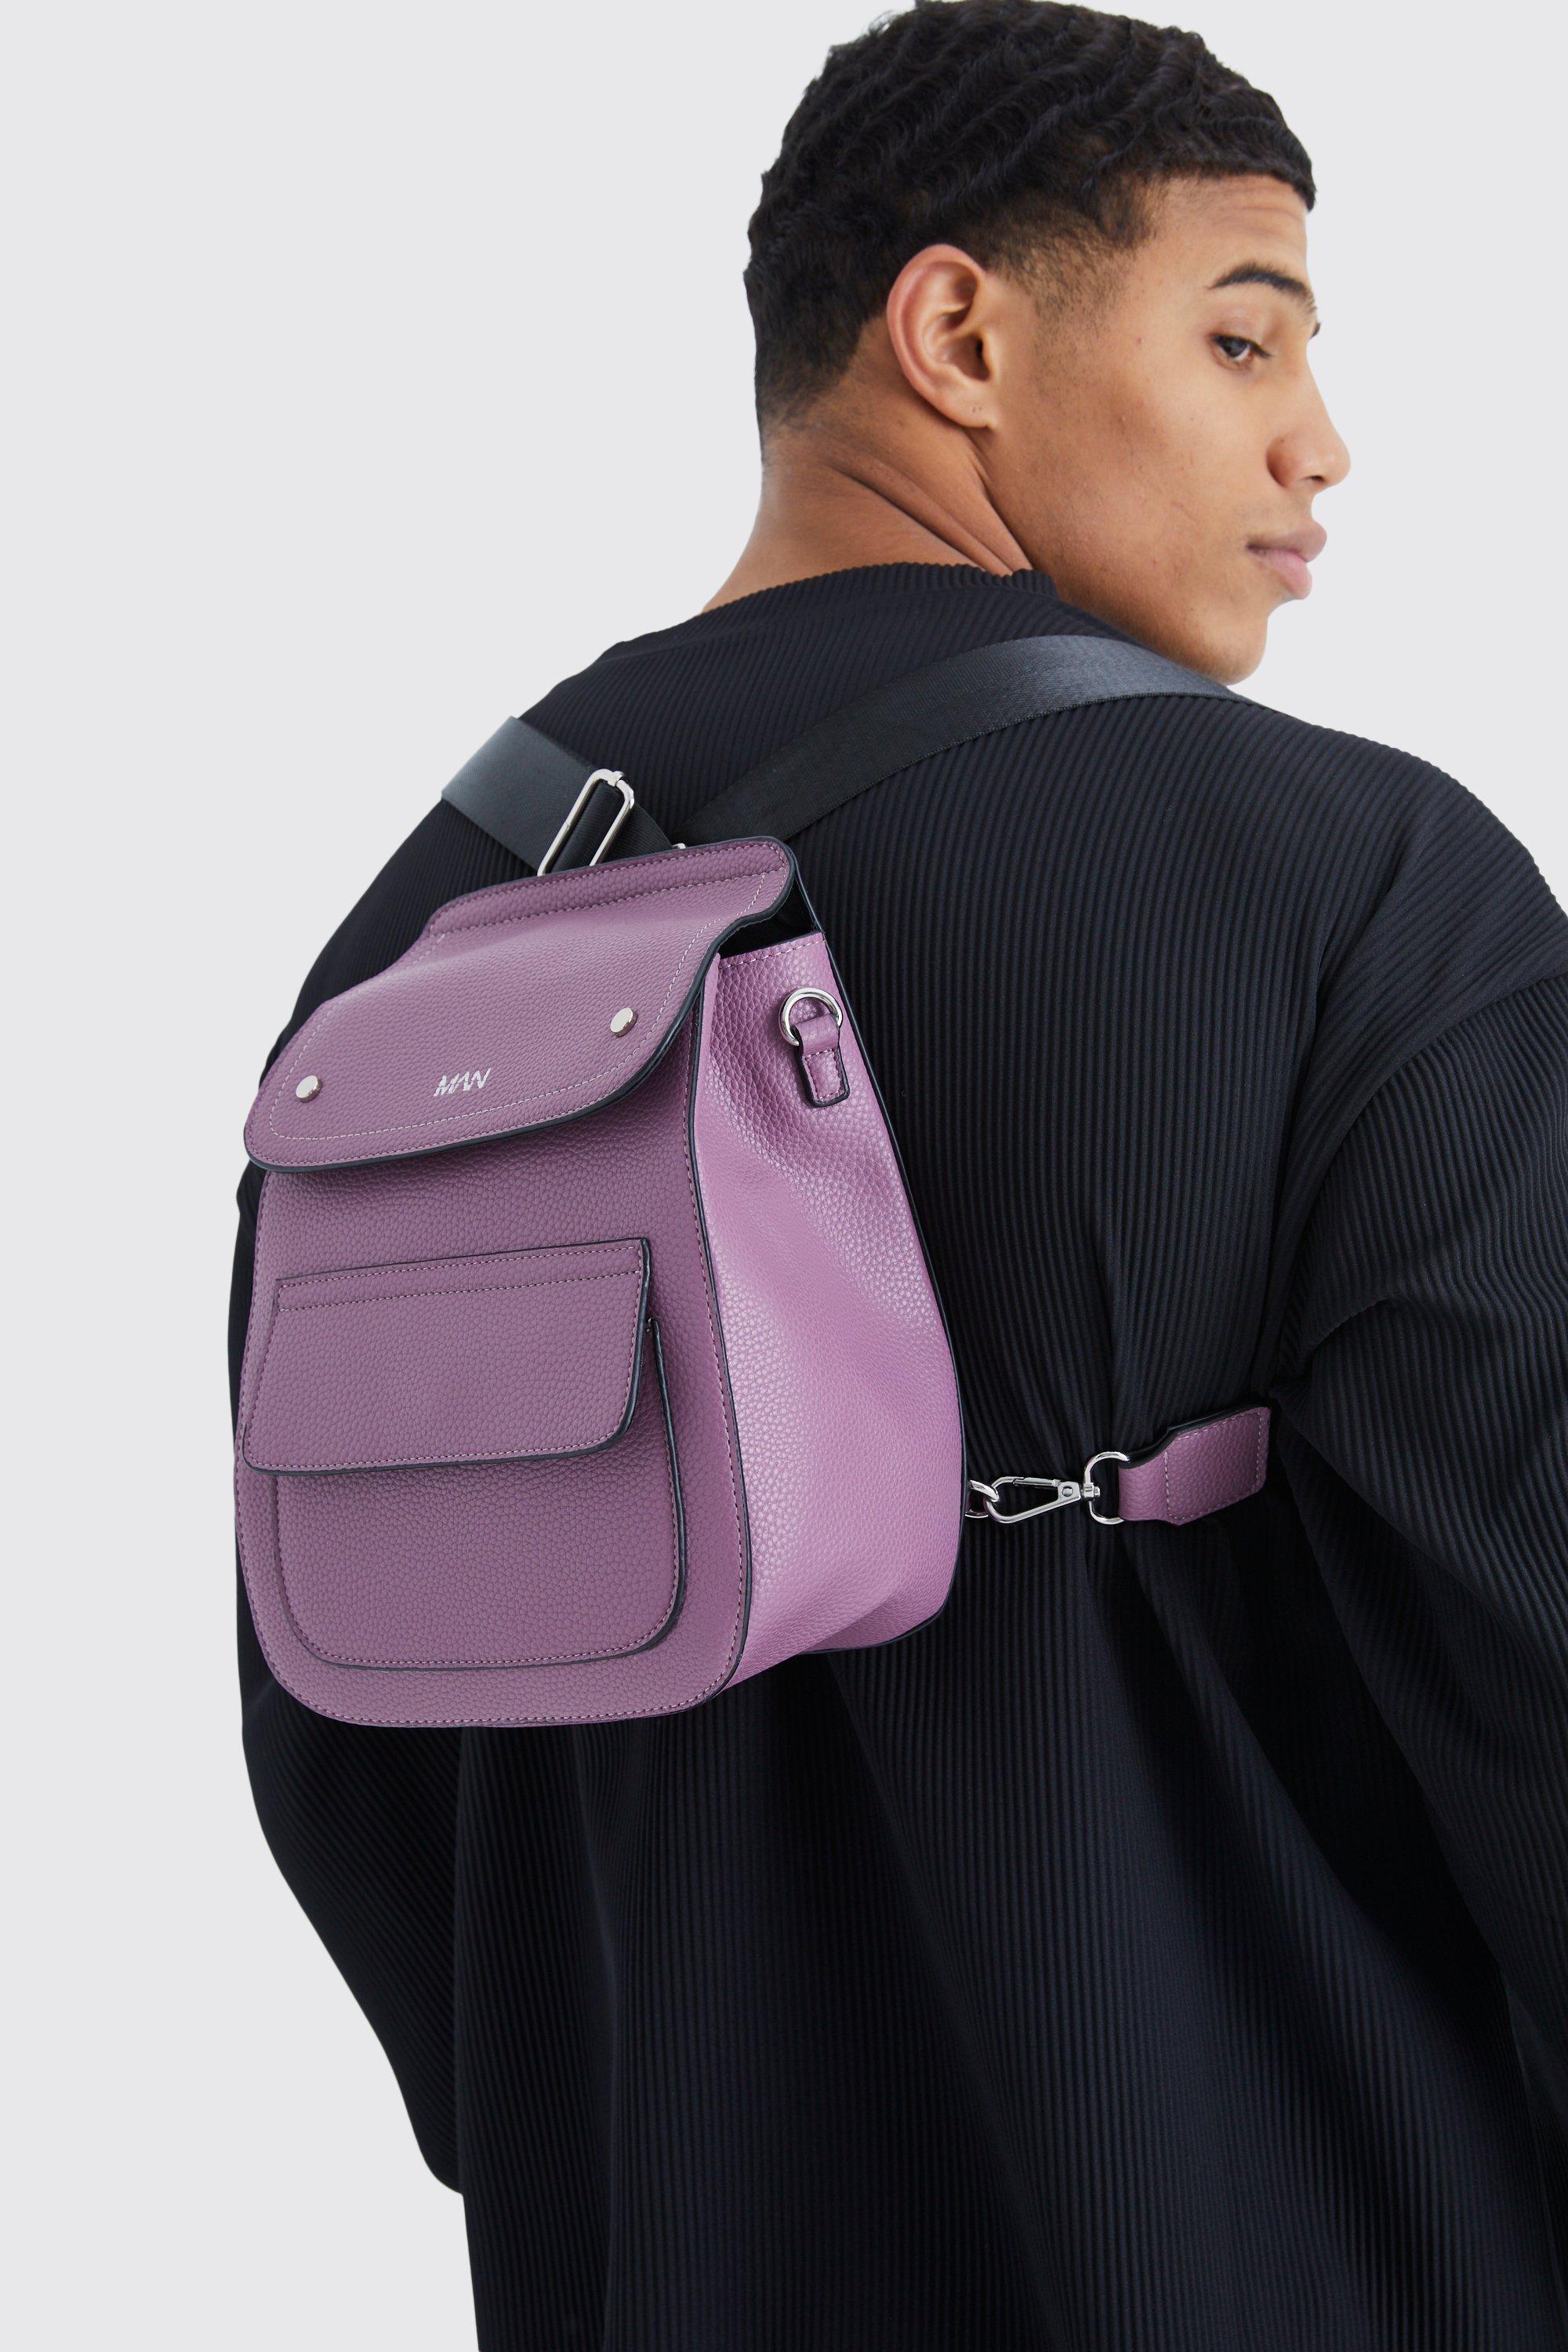 sac à dos habillé à poches multiples - man homme - violet - one size, violet